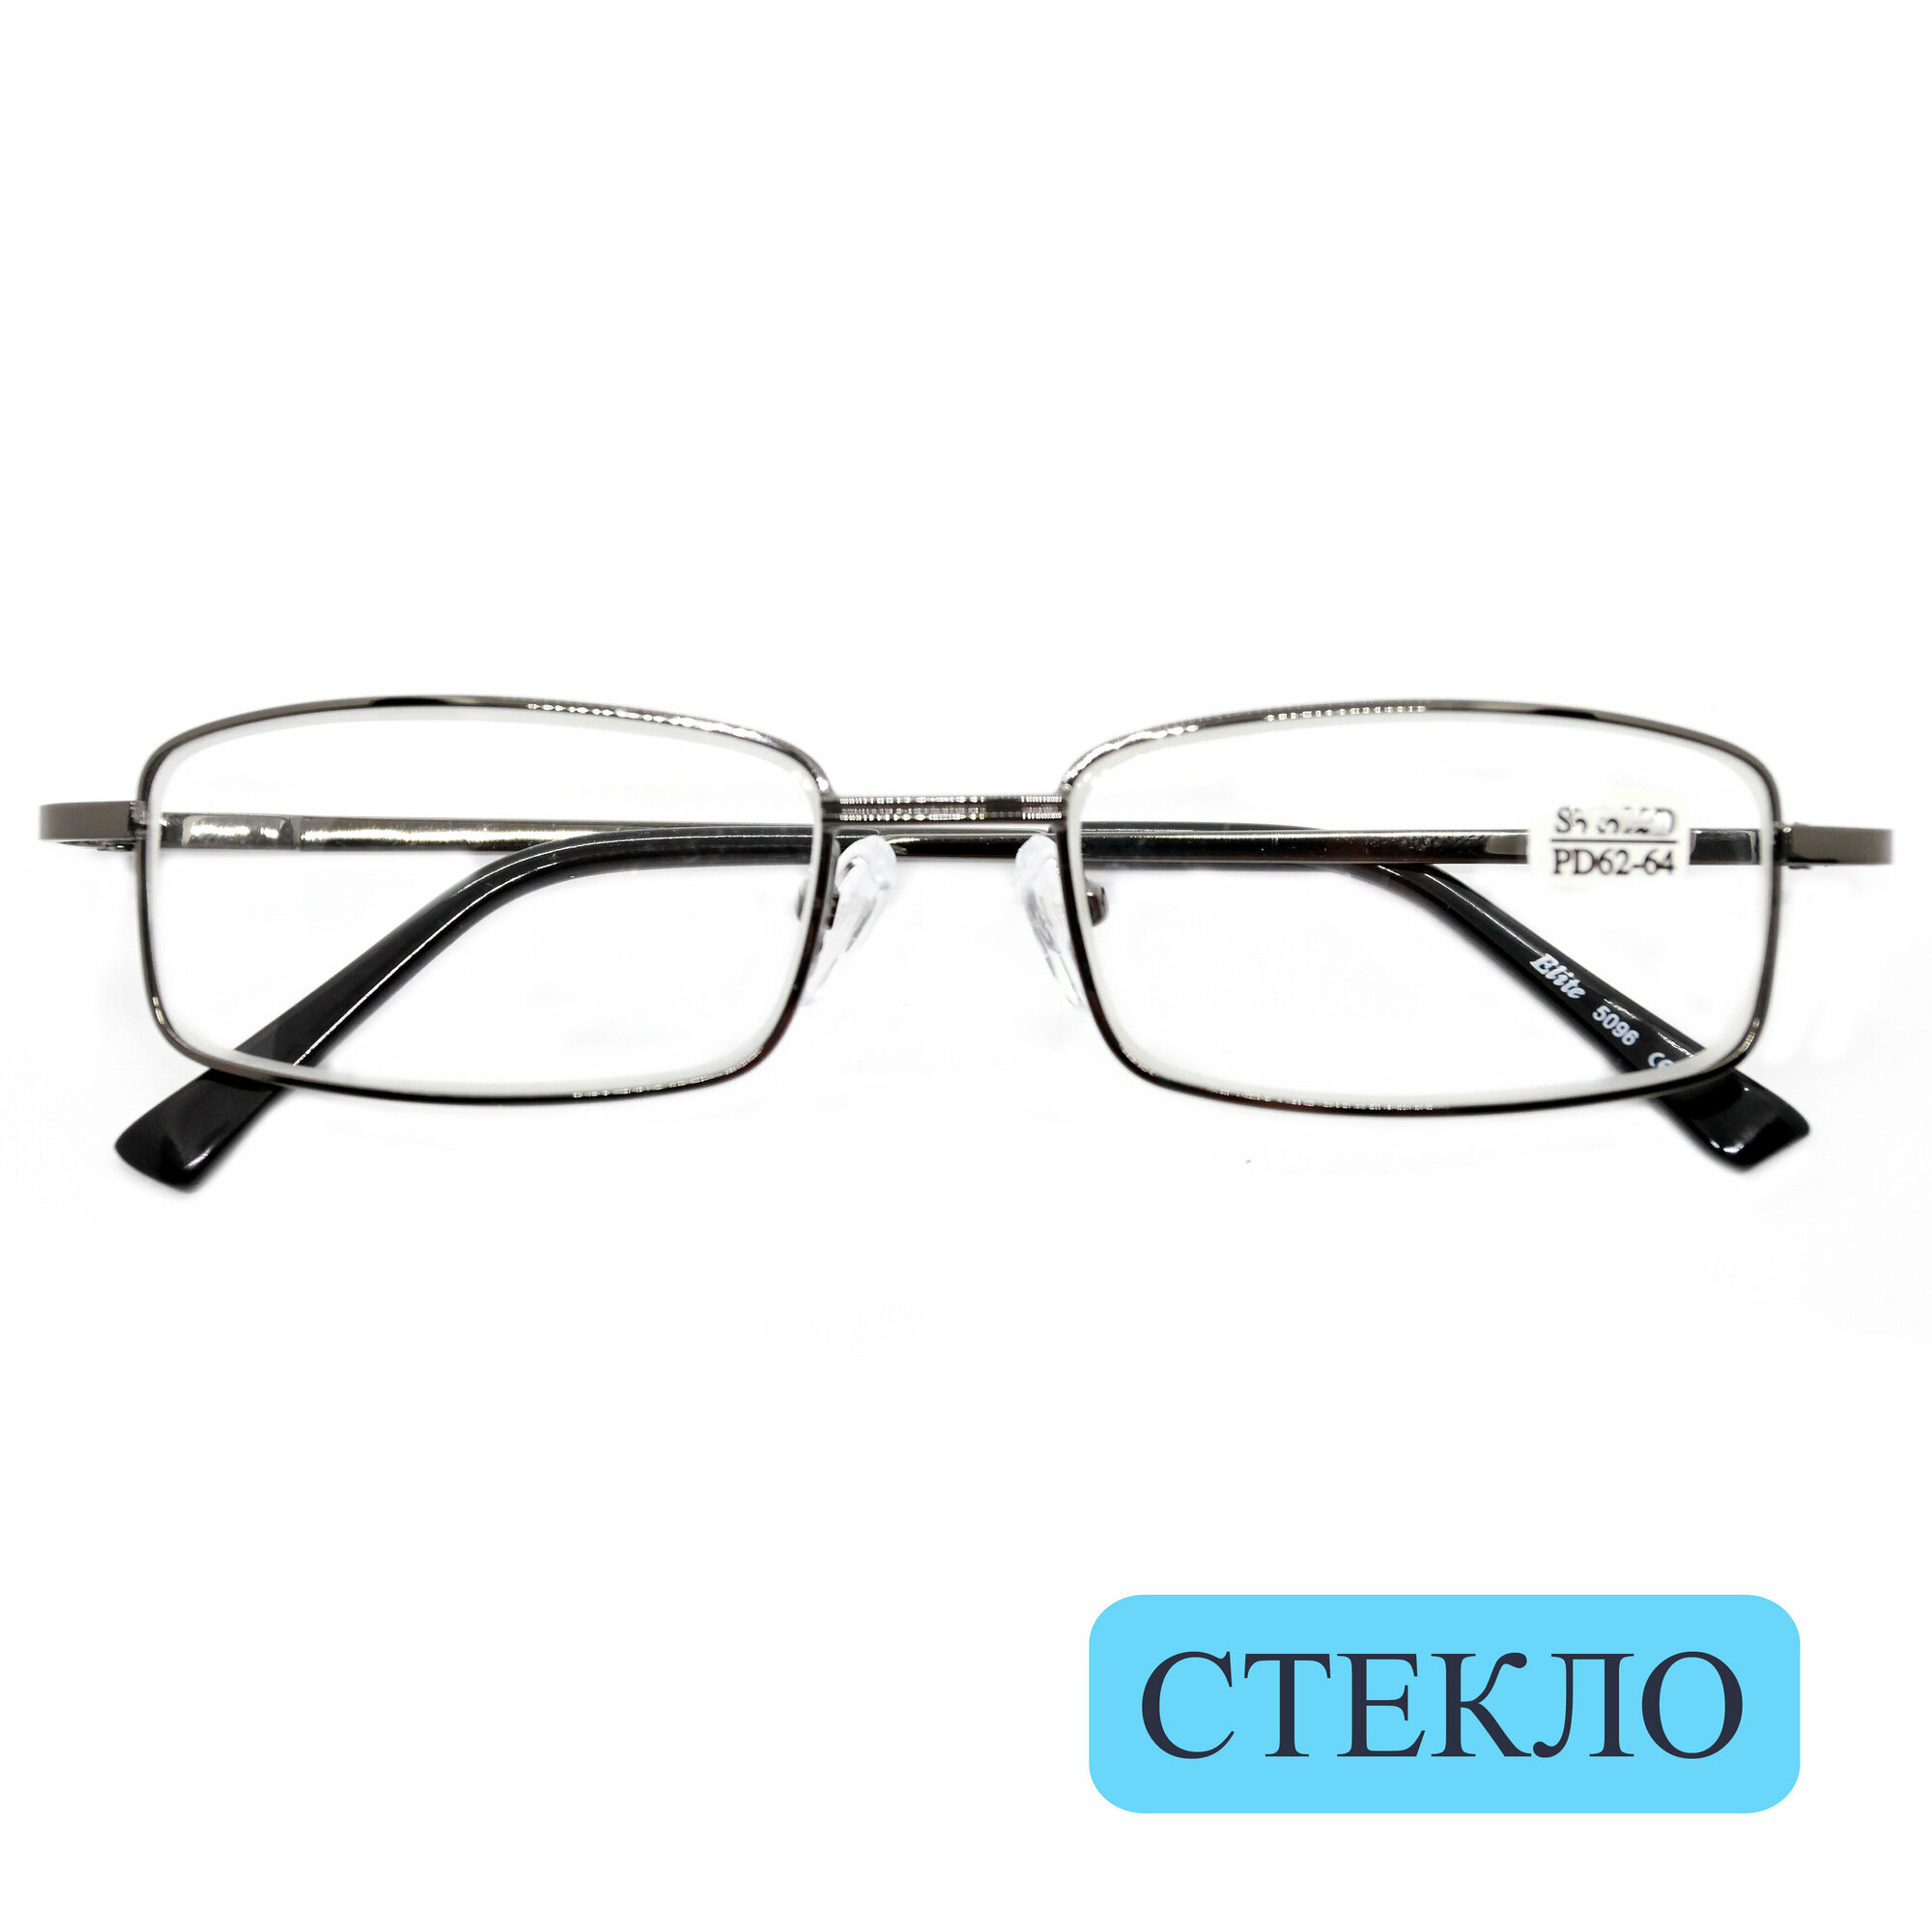 Корригирующие очки для чтения (+3.25) ELITE 5096, линза стекло, цвет серый, РЦ 62-64, с салфеткой